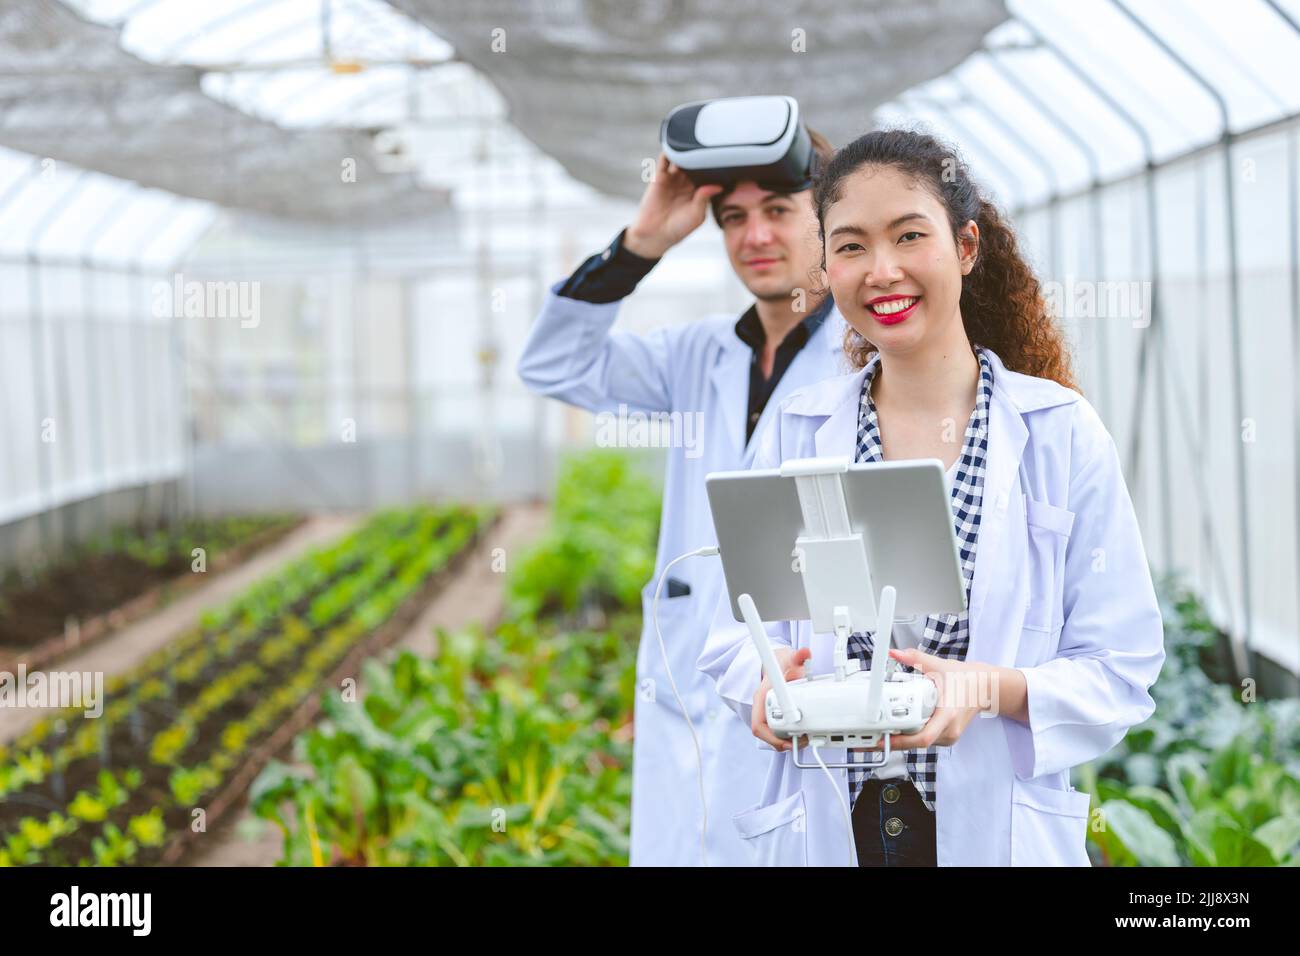 Investigador que utiliza controlador de drones con gafas de vista de mosca de la planta de cultivo en la granja agrícola. Foto de stock